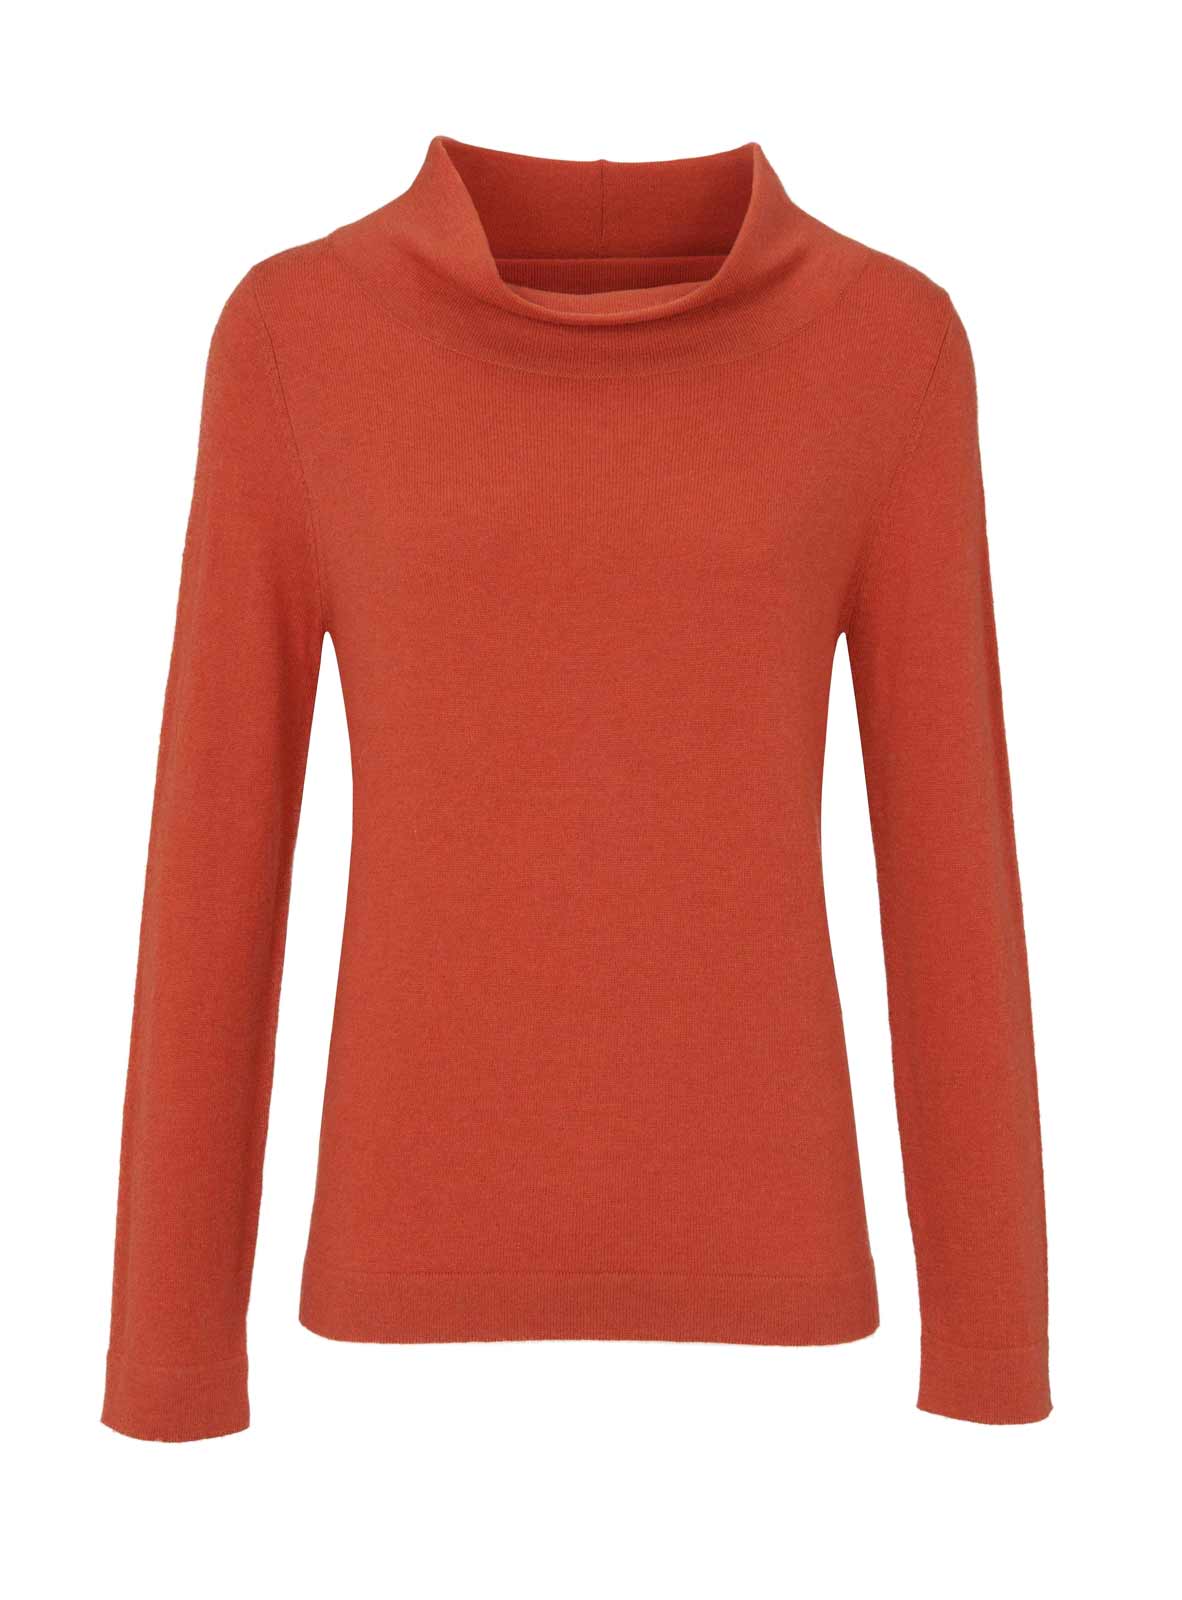 Ashley Brooke Damen Designer-Pullover, orange